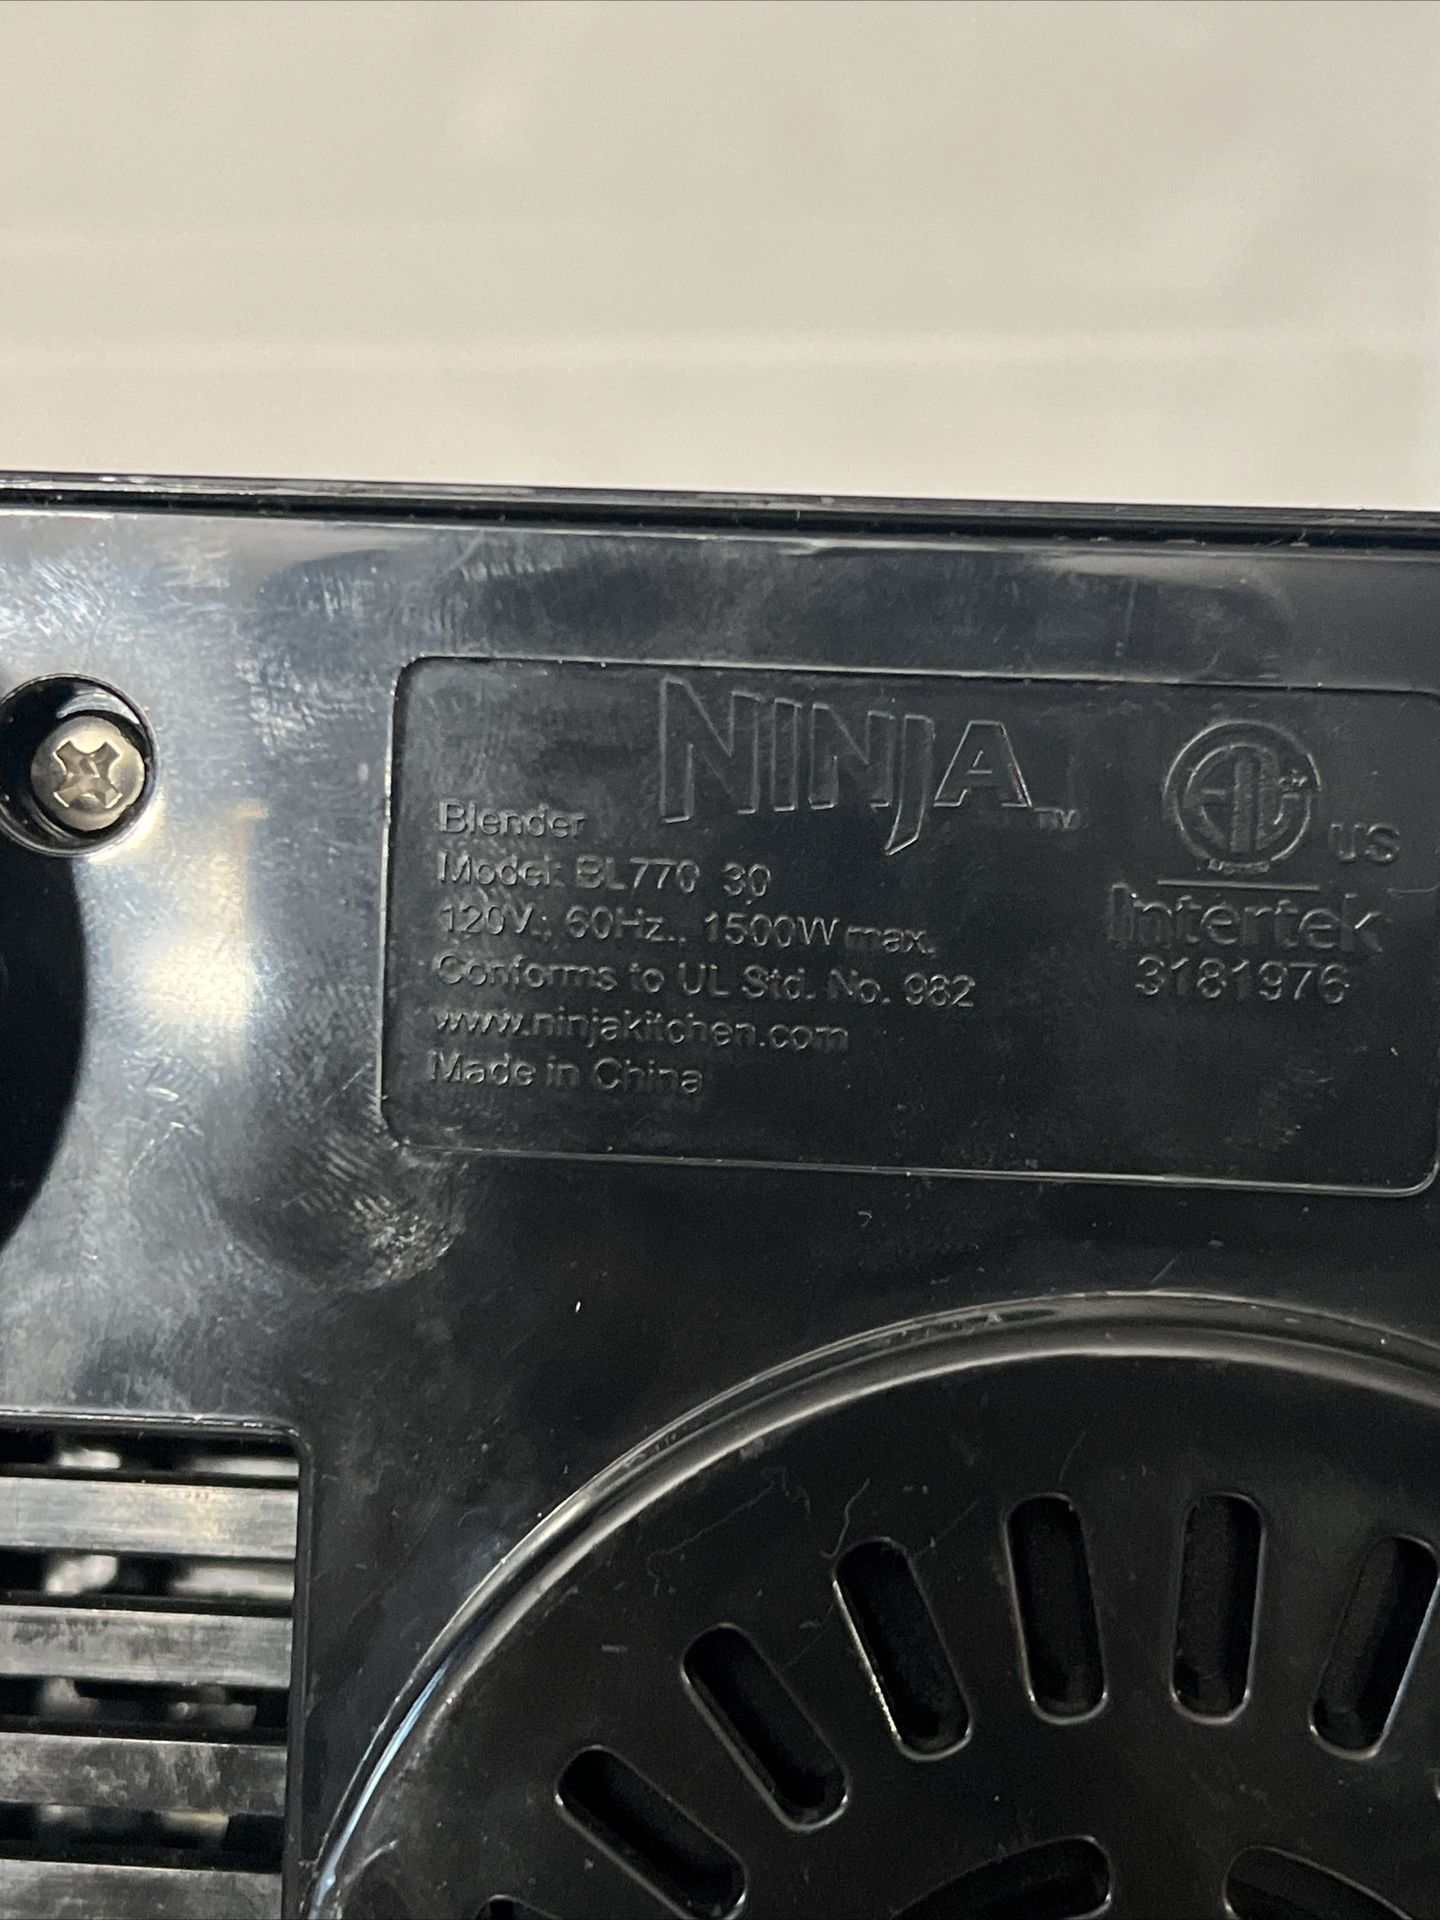 Ninja Blender Parts for Sale in Mesa, AZ - OfferUp